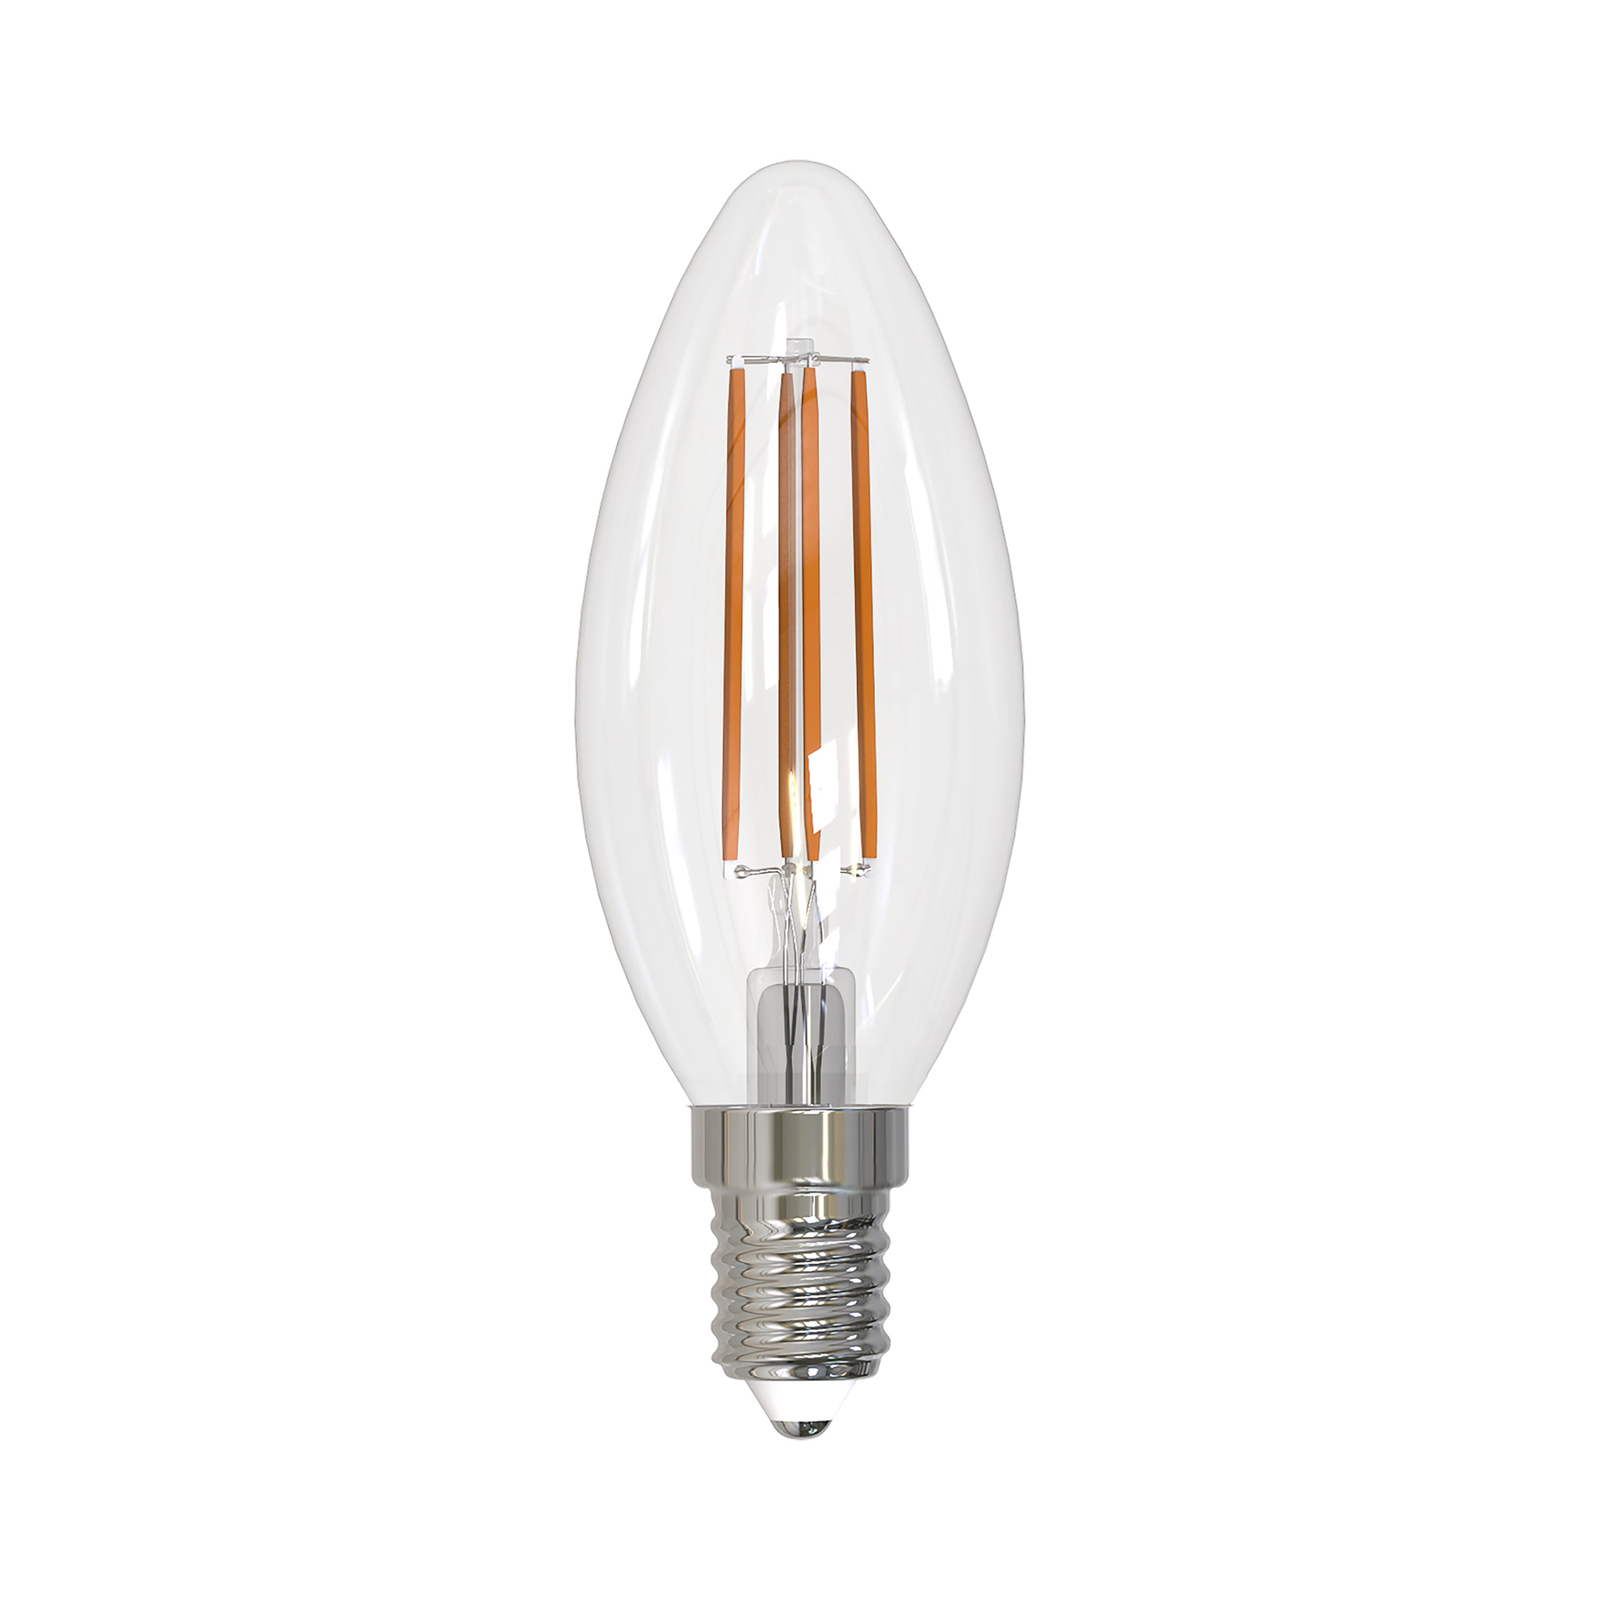 Arcchio filament LED bulb E14 candle, set of 3, 2700 K